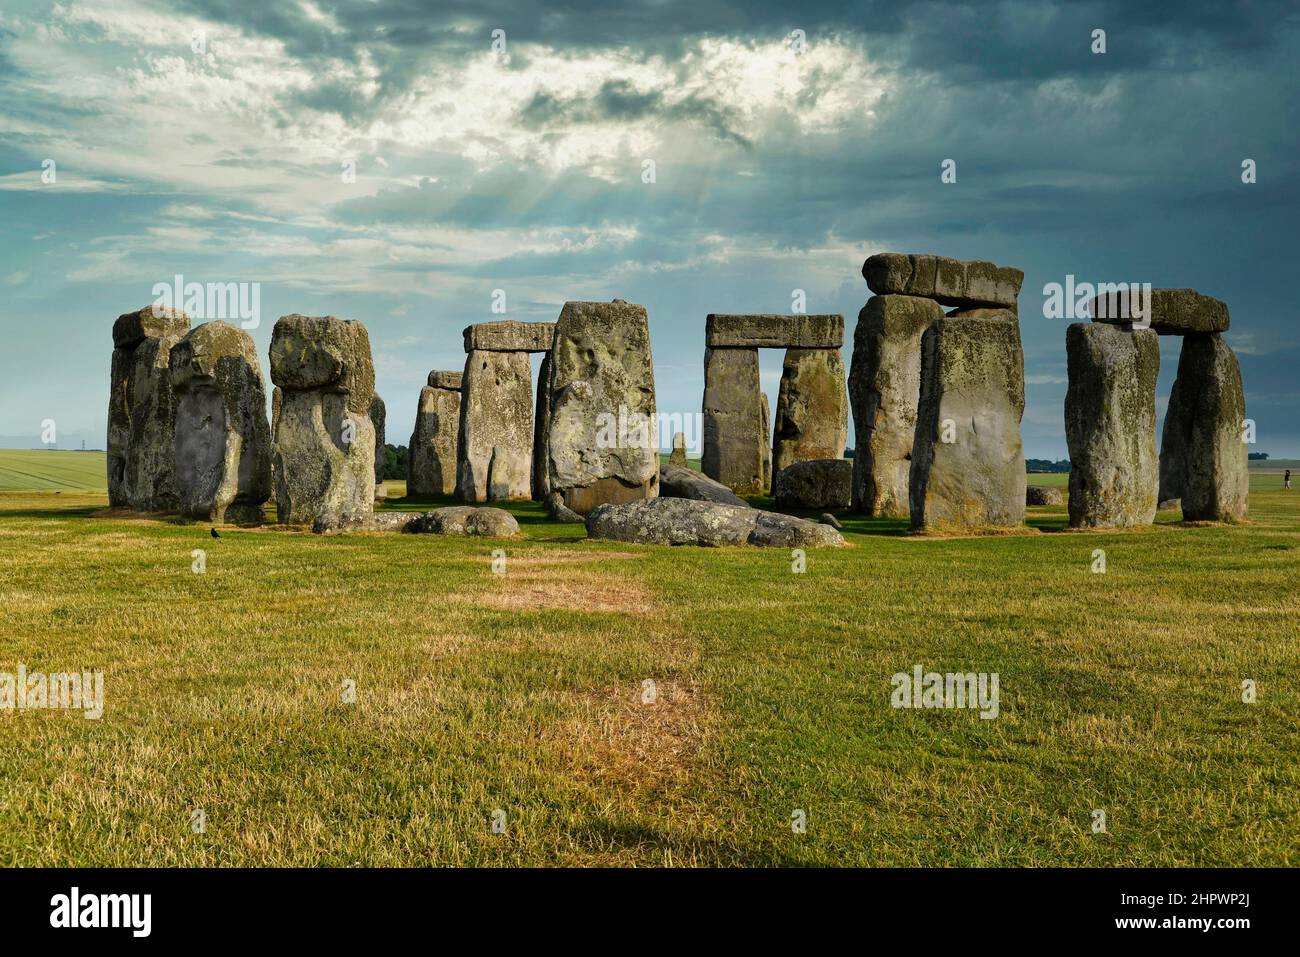 Stonehenge, site du patrimoine mondial de l'UNESCO, la plaine de Salisbury, Wiltshire, Angleterre, Royaume-Uni Banque D'Images